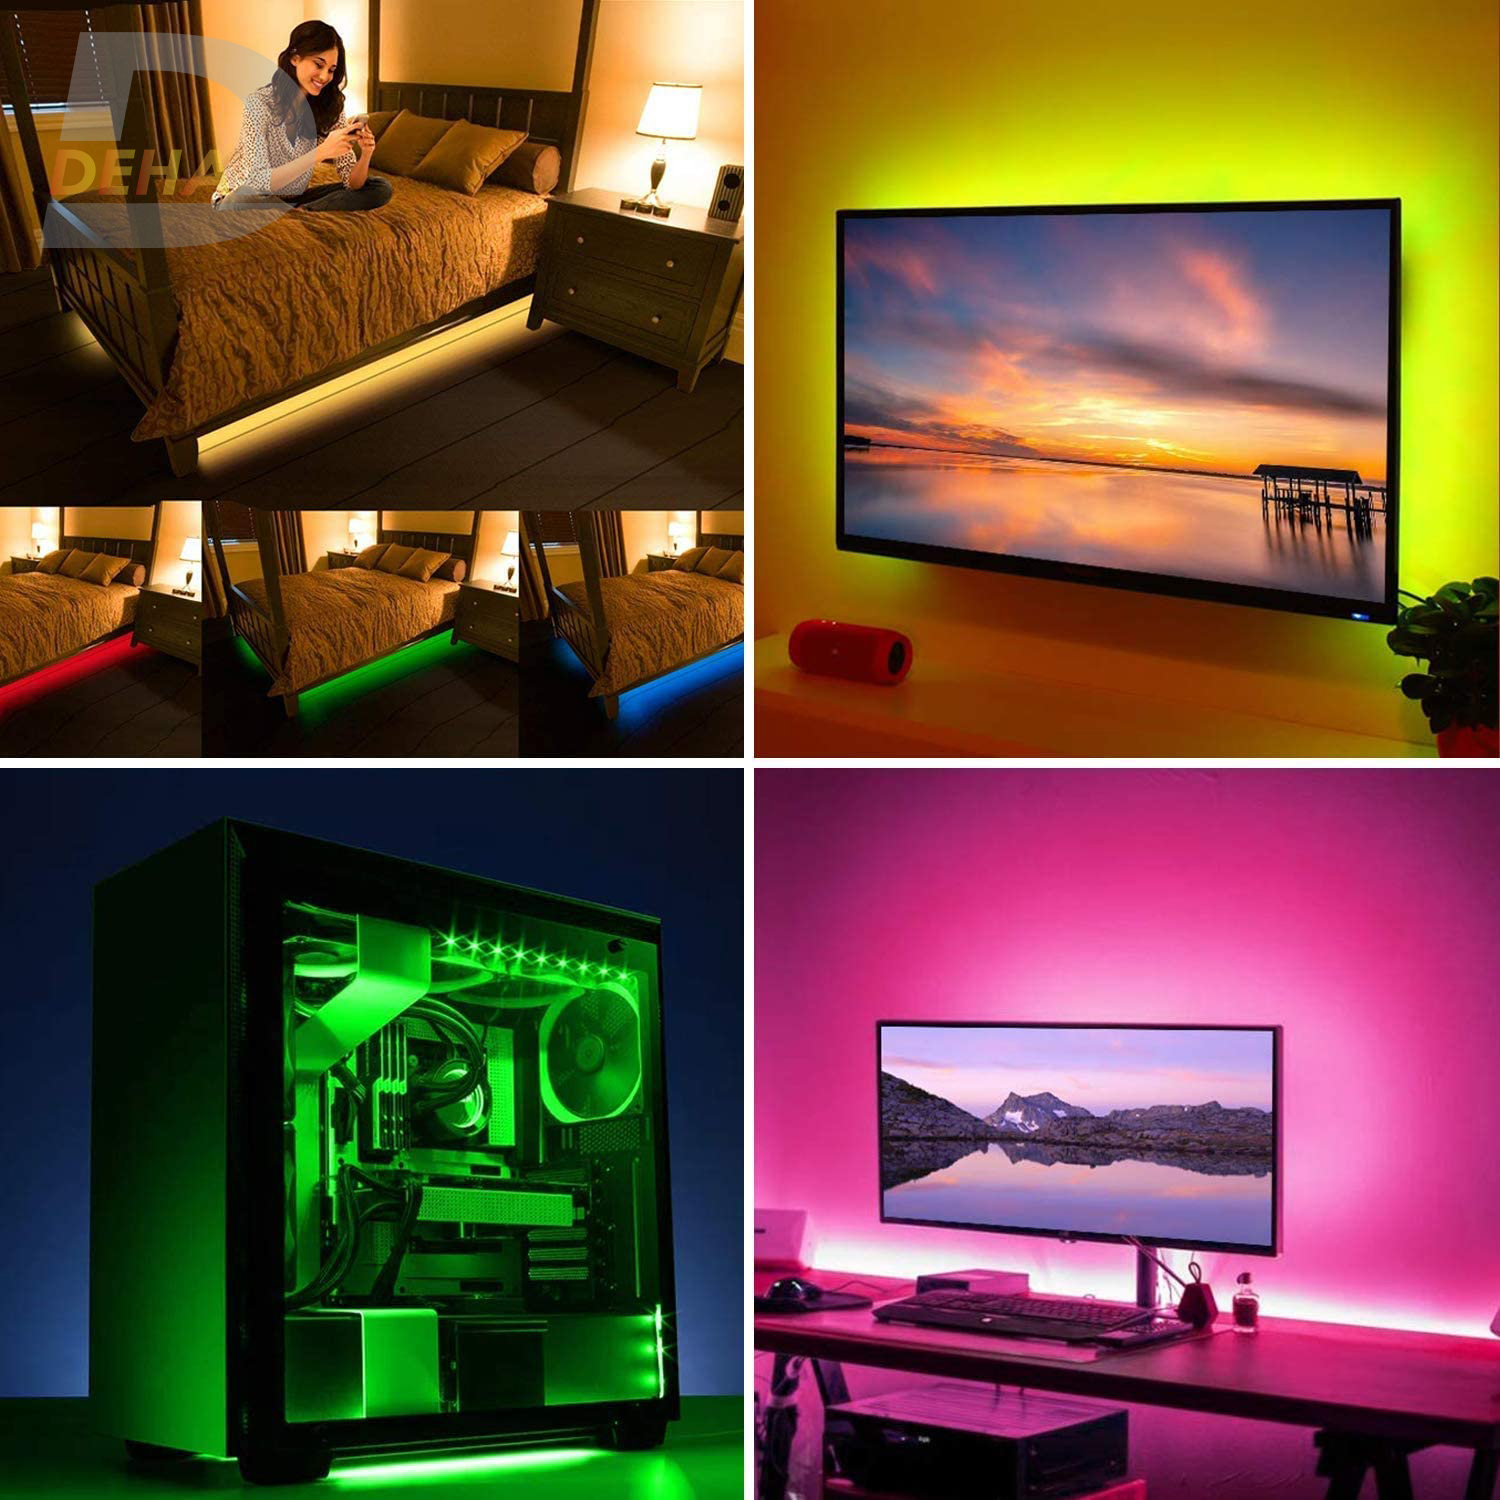 Bộ Đèn led dây dán nguồn USB RGB đổi màu điều khiển chọn màu đứng yên, nhấp nháy, bóng 5050 strip light trang trí cây máy tính, màn hình, ti vi, TV, Gaming, Tiktok dán tường (Tùy chọn chiều dài dây, loại dây chống nước hay không)